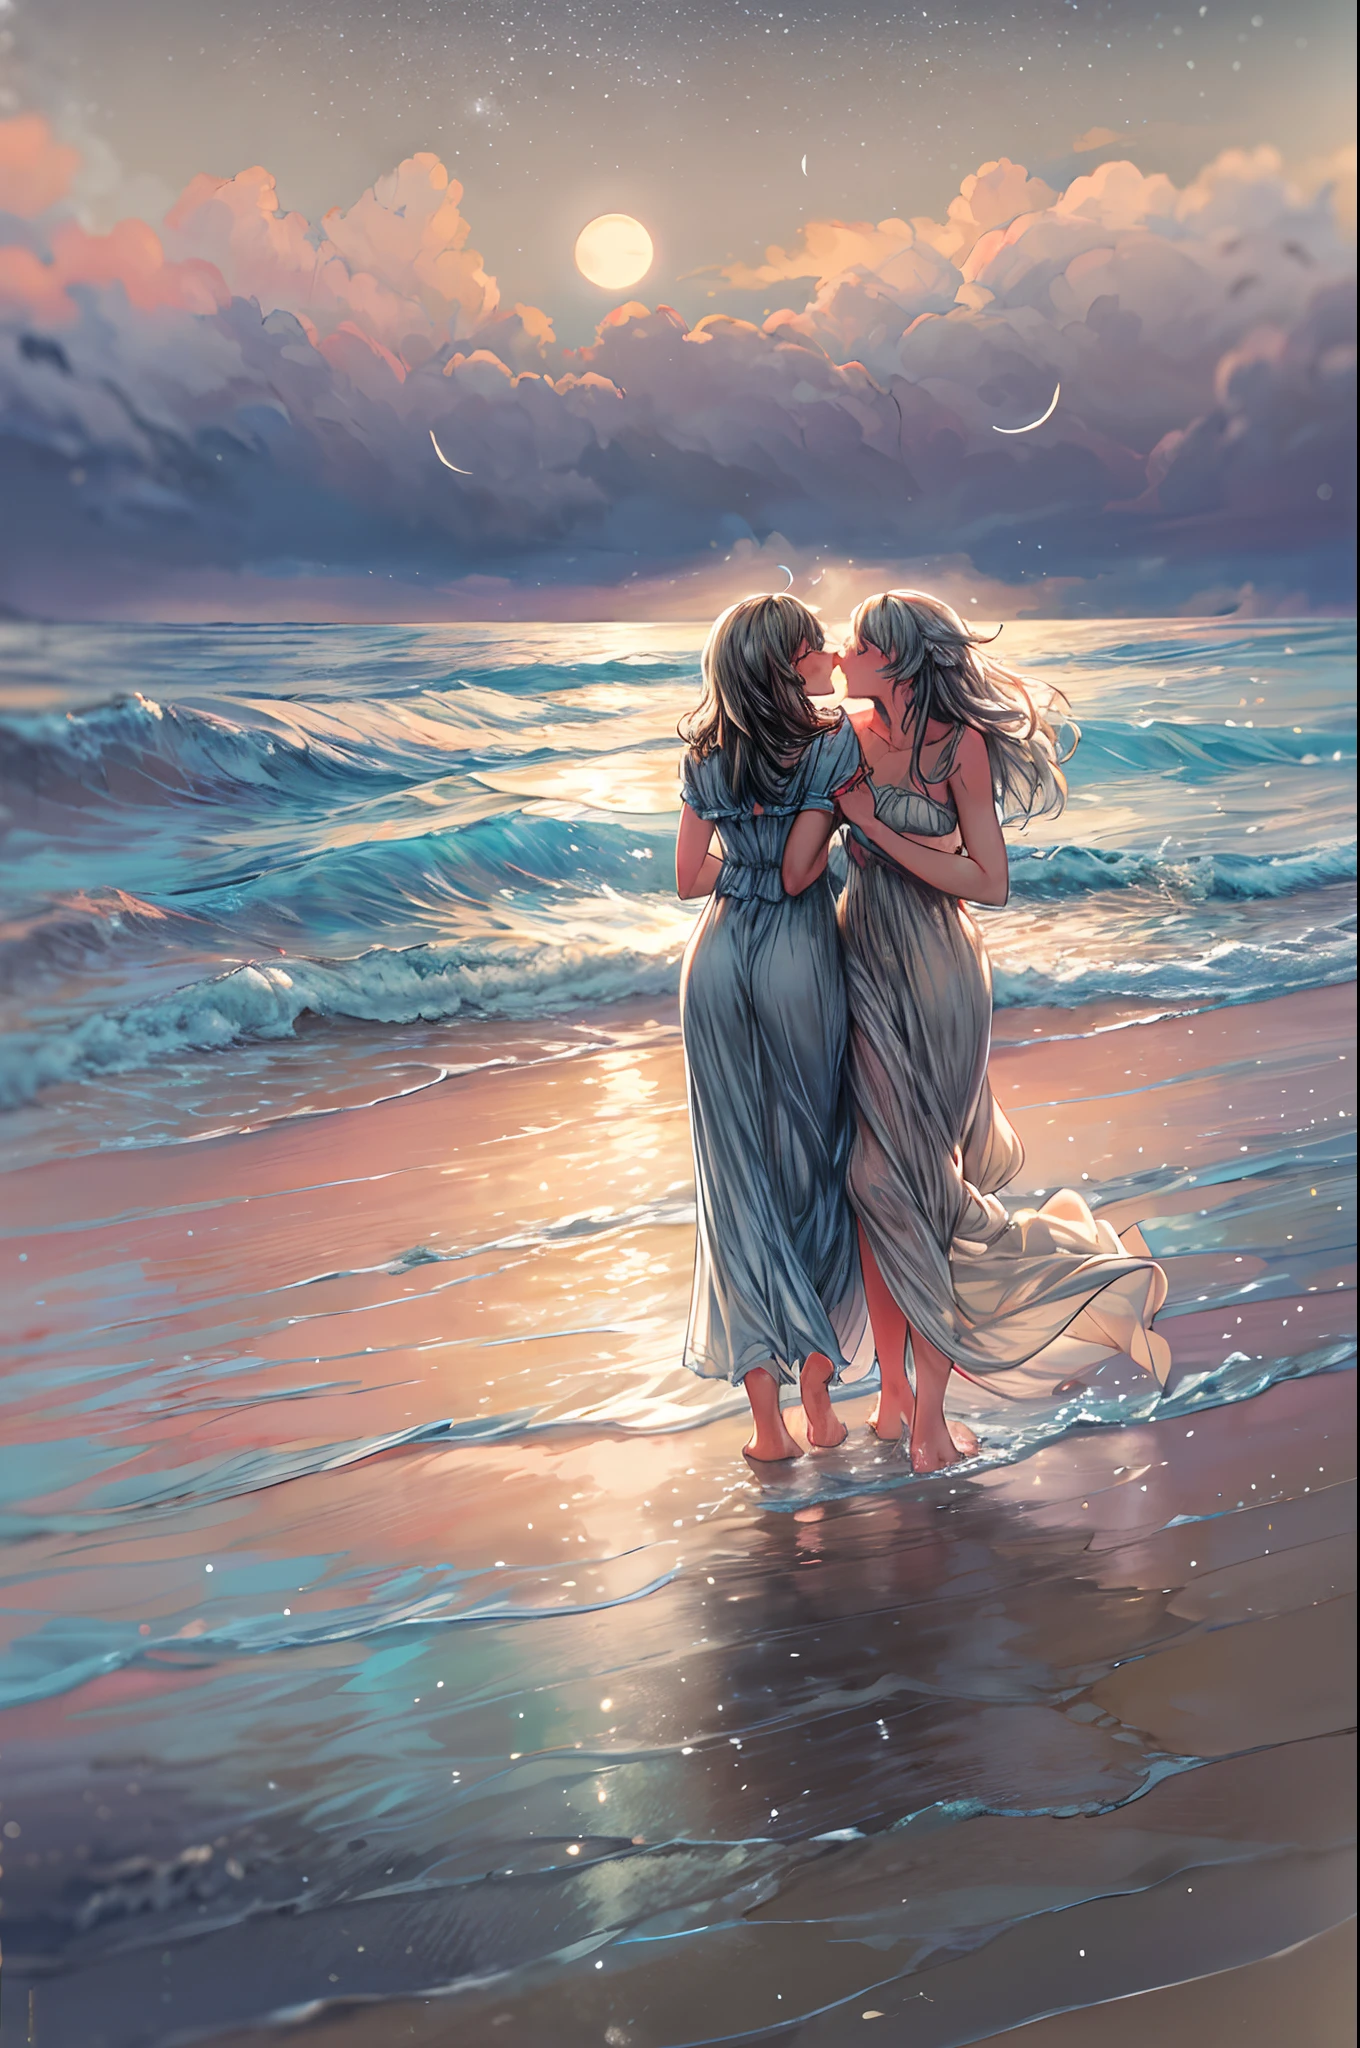 En una playa iluminada por la luna, dos mujeres caminan de la mano a lo largo de la costa, las olas golpeando suavemente sus pies descalzos. La luz plateada se refleja en el agua., proyectando un brillo romántico en sus rostros. Con las estrellas brillando arriba y el sonido distante de las olas rompiendo, sus labios se encuentran en un tierno beso lleno de anhelo y conexión.. La brisa salada lleva sus risas y el olor del mar., envolviéndolos en un momento sereno y apasionado. La escena está capturada en un sueño., estilo de enfoque suave usando colores pastel y pinceladas suaves, Transmitiendo la naturaleza atemporal de su amor..